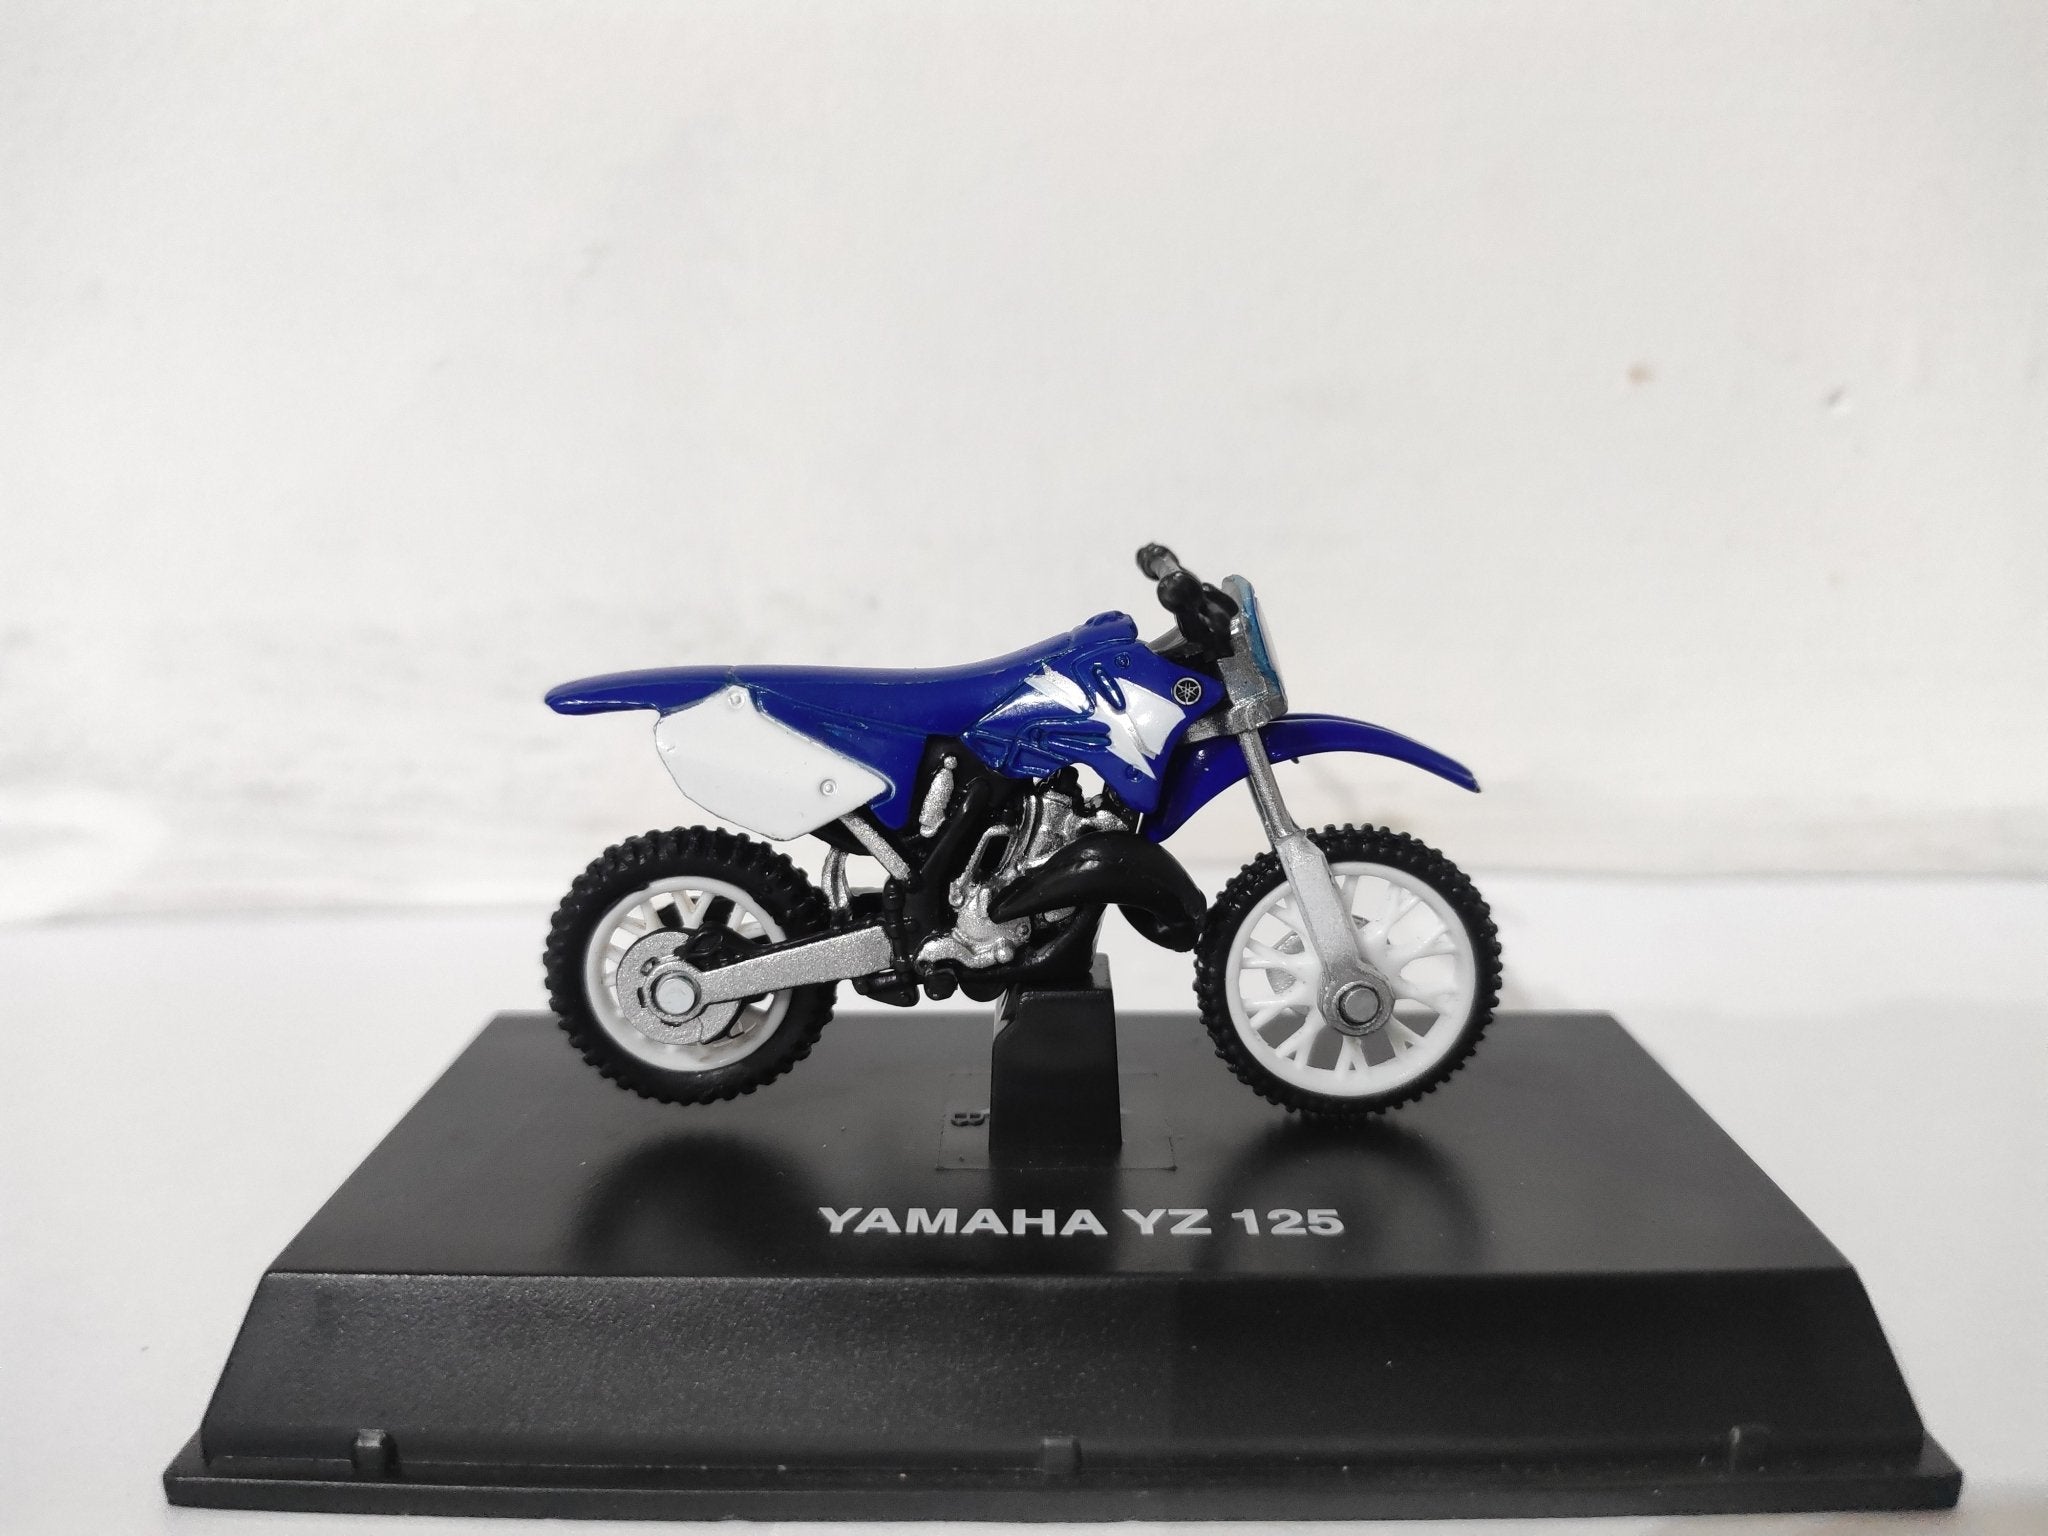 New Ray Toys 1:32 Yamaha YZ 125 – Even Strokes